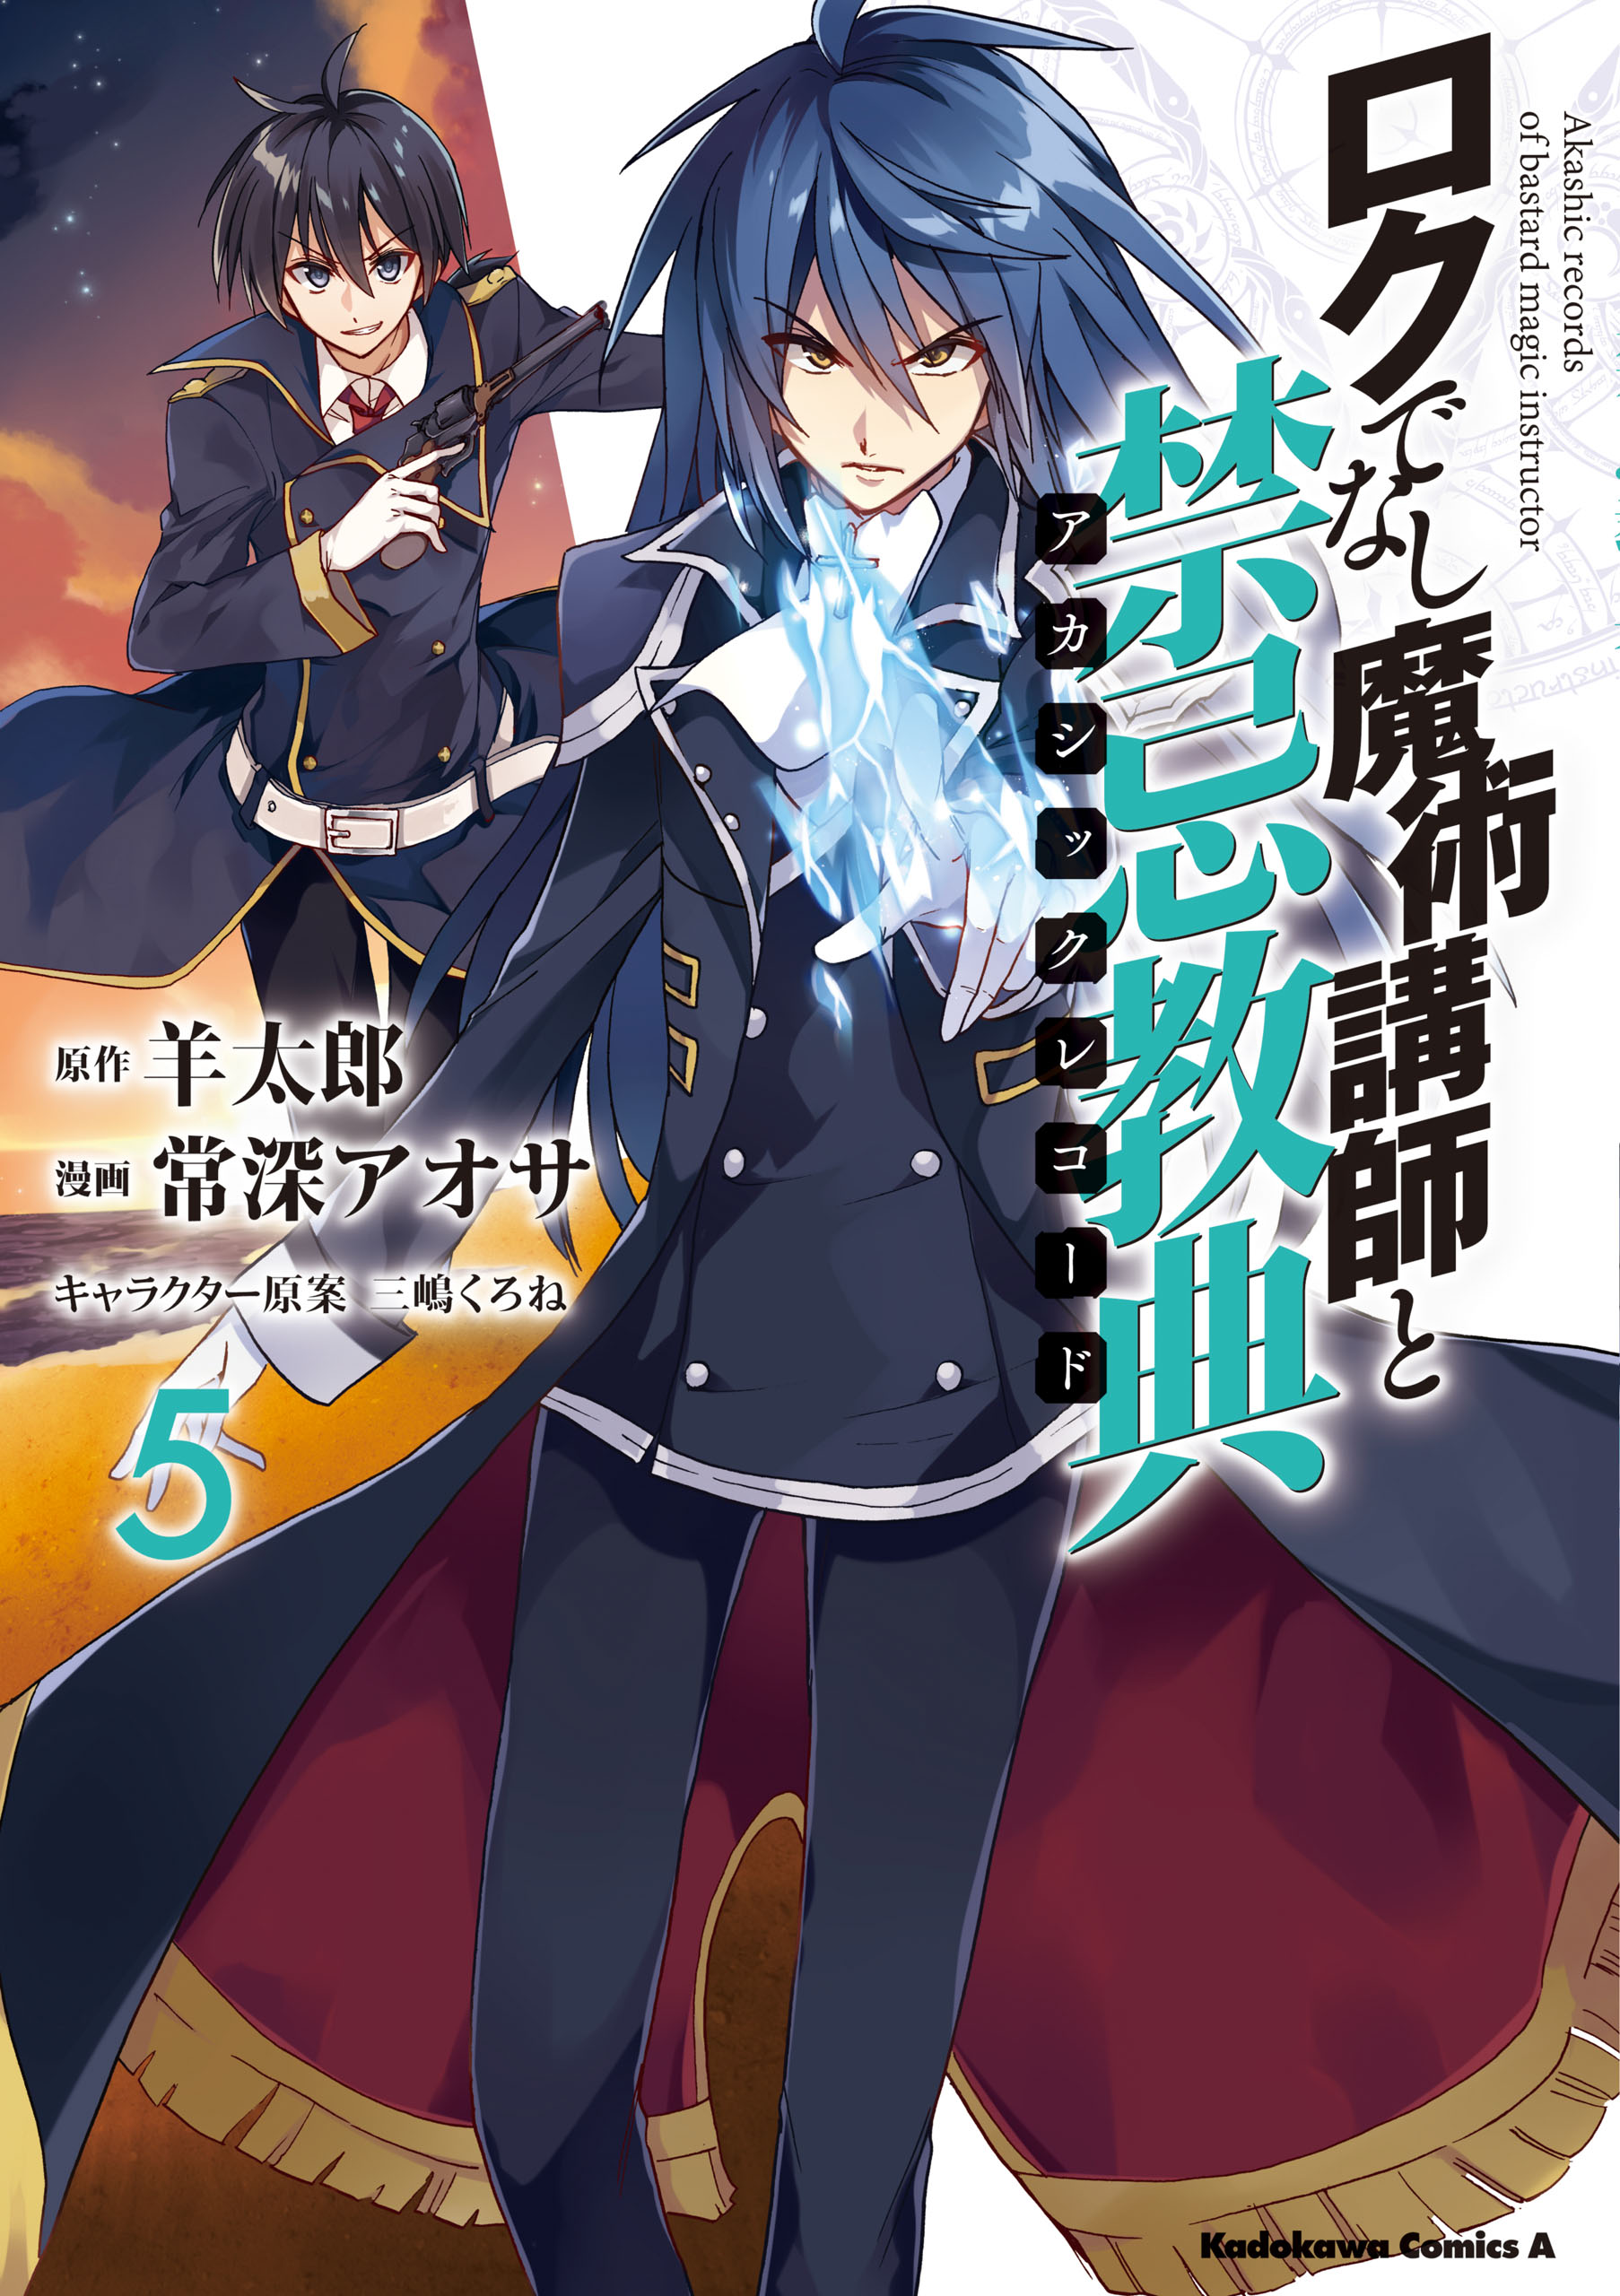 Generic Manga World - Rokudenashi Majutsu Koushi to Akashic